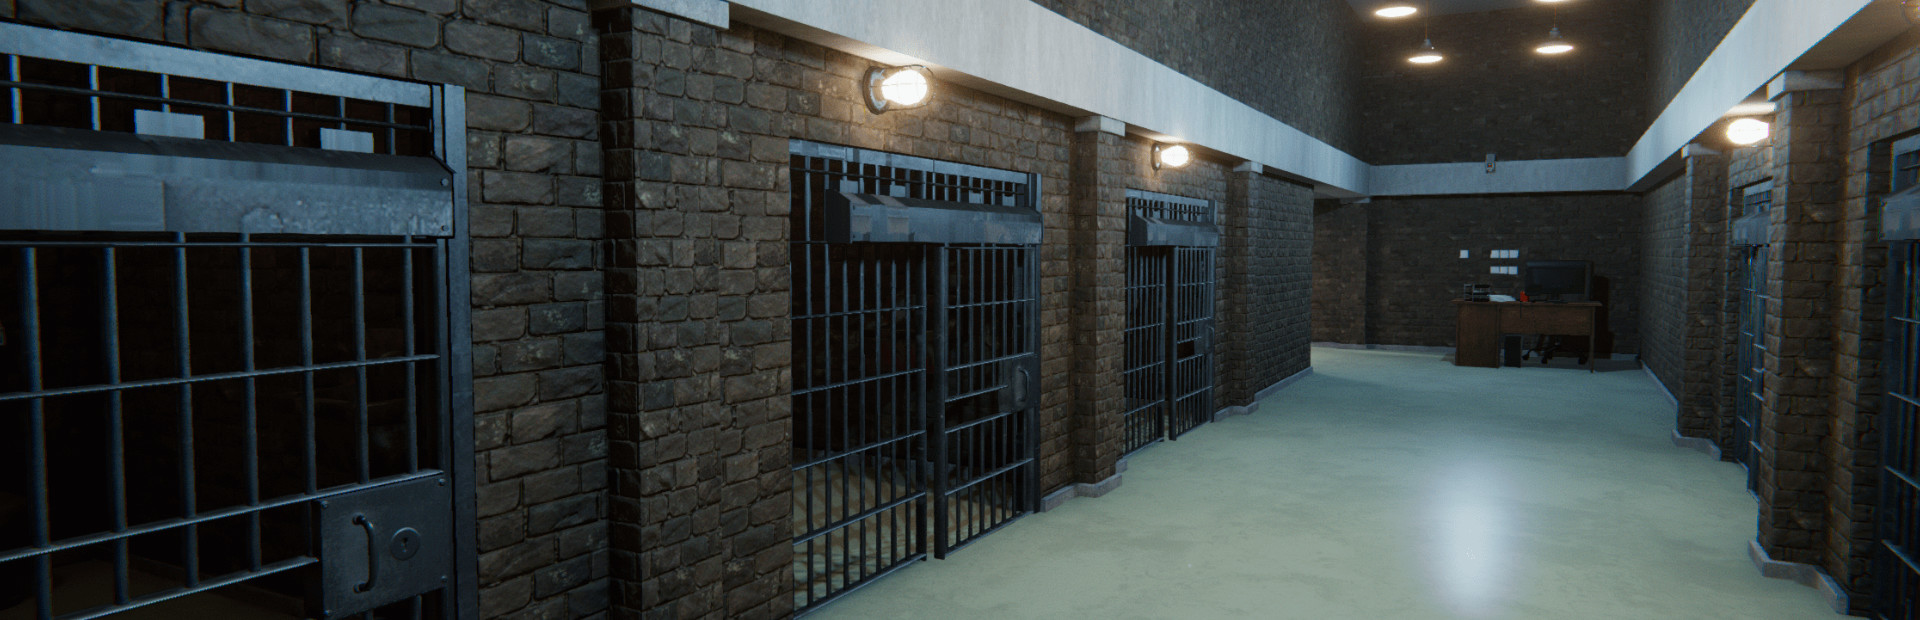 Prison Simulator cover image